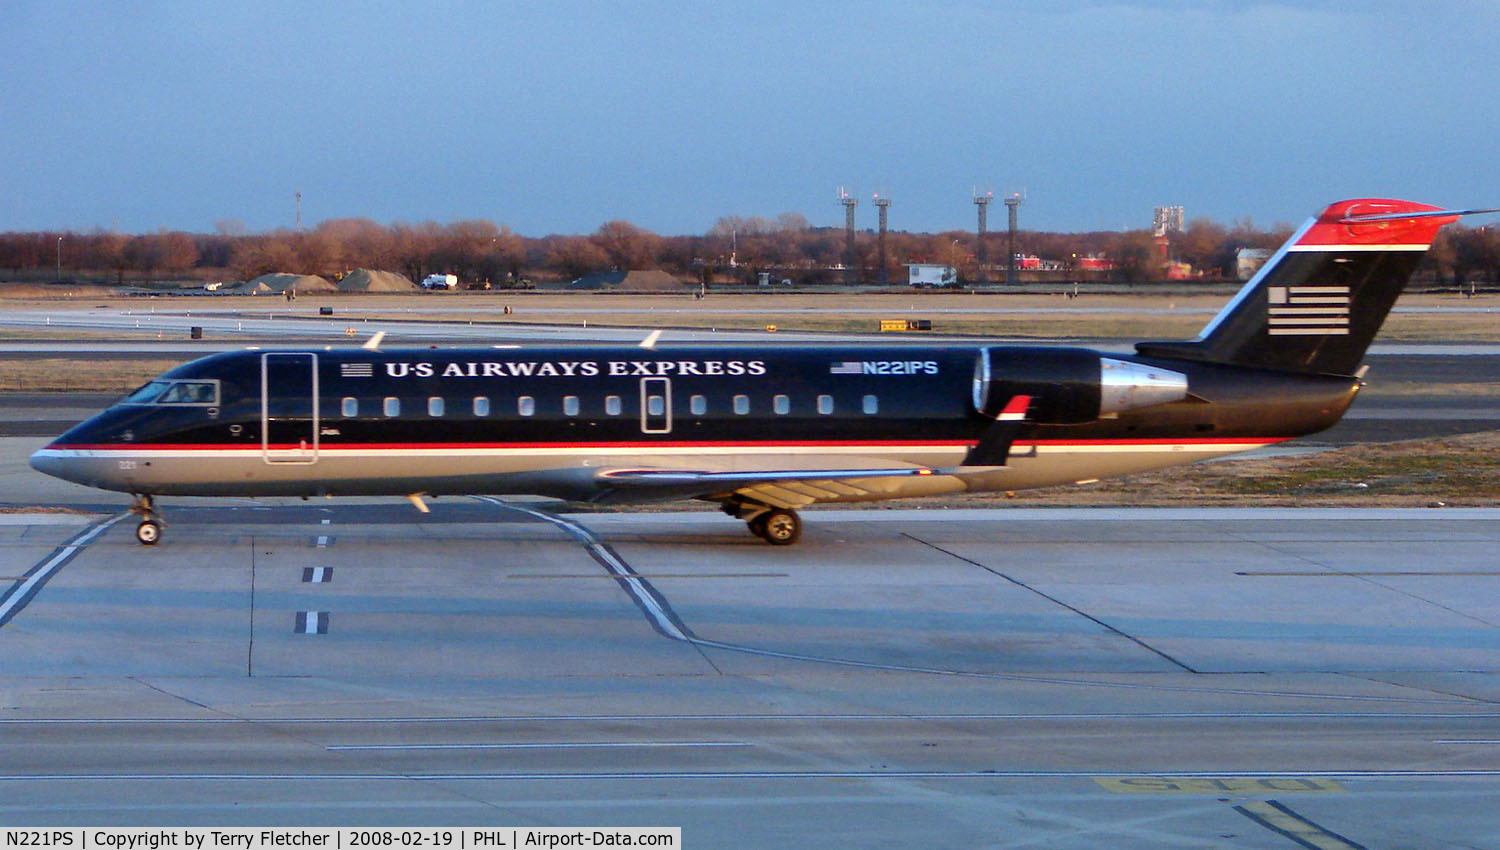 N221PS, 2004 Bombardier CRJ-200LR (CL-600-2B19) C/N 7889, US Airways CRJ arrives Philadelphia just before dusk